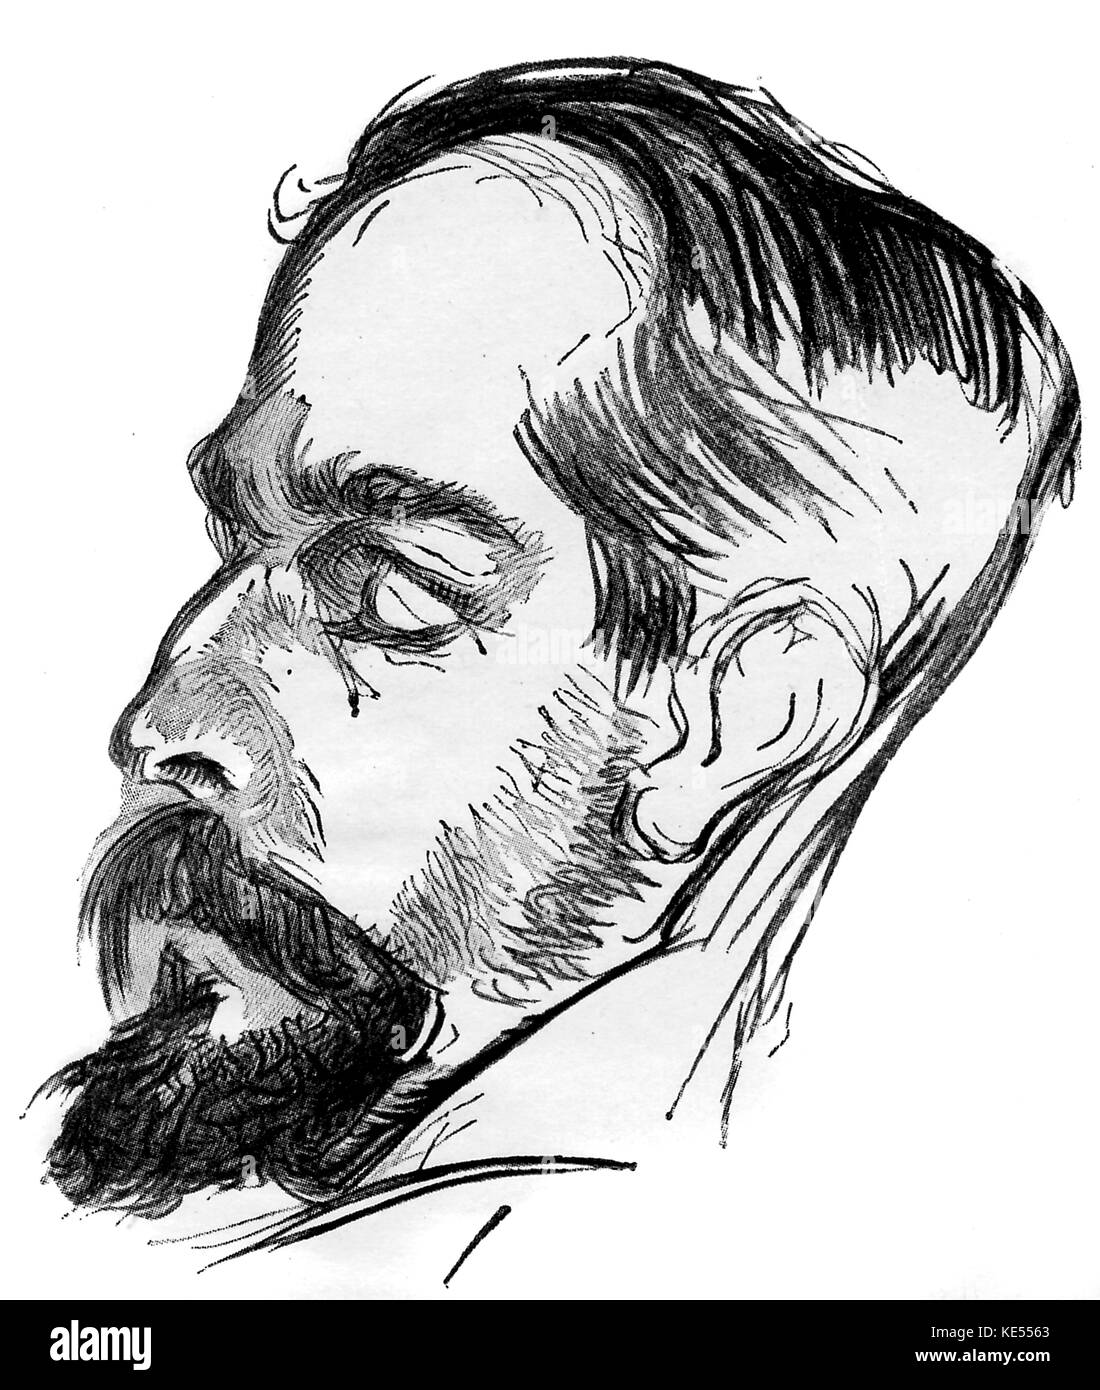 Claude Debussy auf seinem Sterbebett - Zeichnung (Revue Musicale). Künstler unbekannt. Der französische Komponist, 22. August 1862 - 25. März 1918. Stockfoto